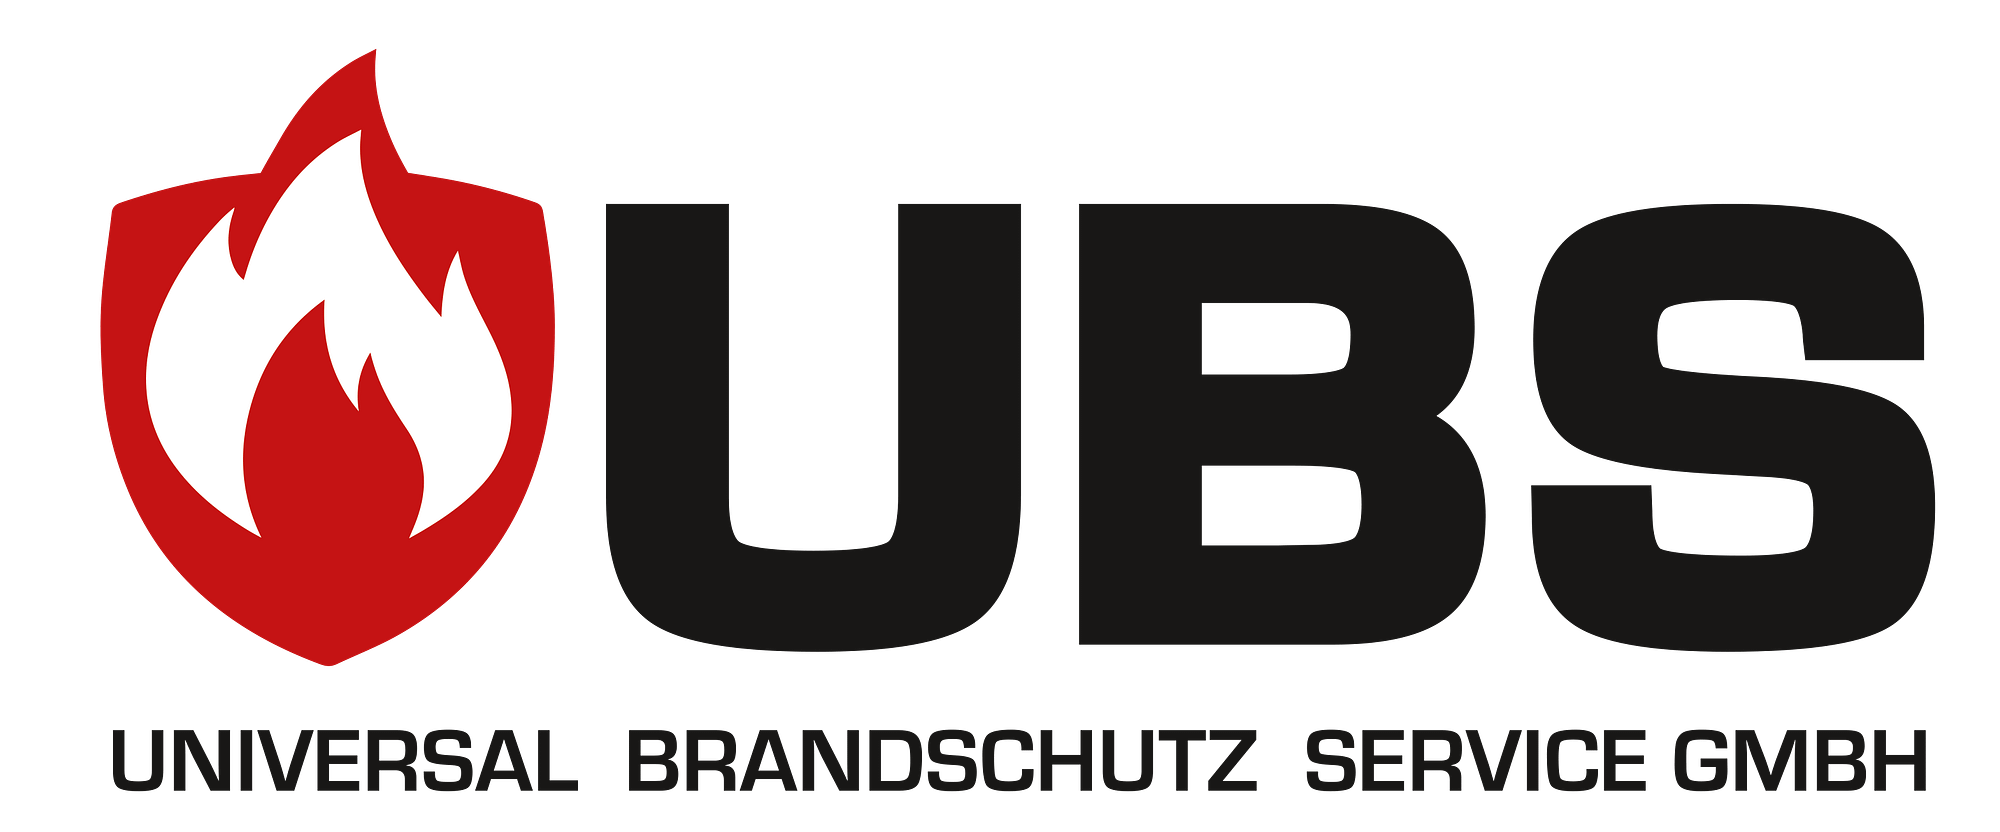 Universal Brandschutz Service GmbH